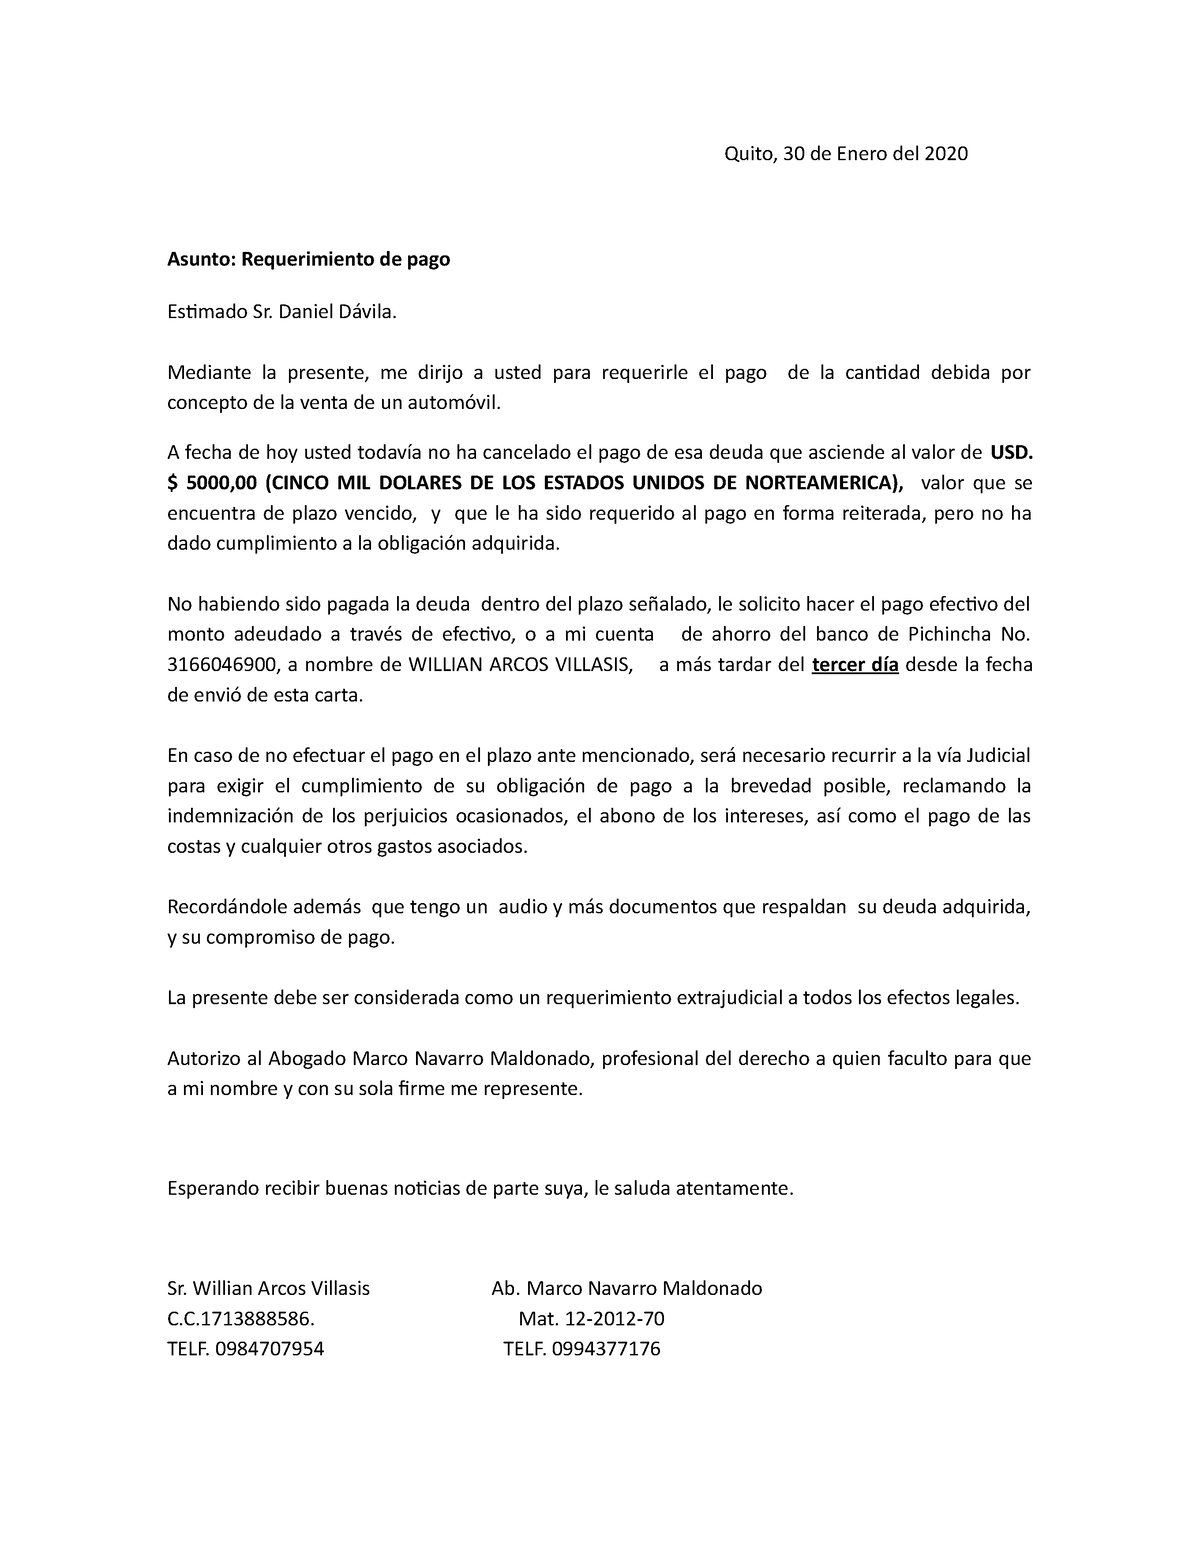 Carta de cobro - ES UN MODELO DE REQUERIMIENTO DE COBRANZA DE MANERA  EXTRAJUDICIAL ANTE DE INICIAR - Studocu